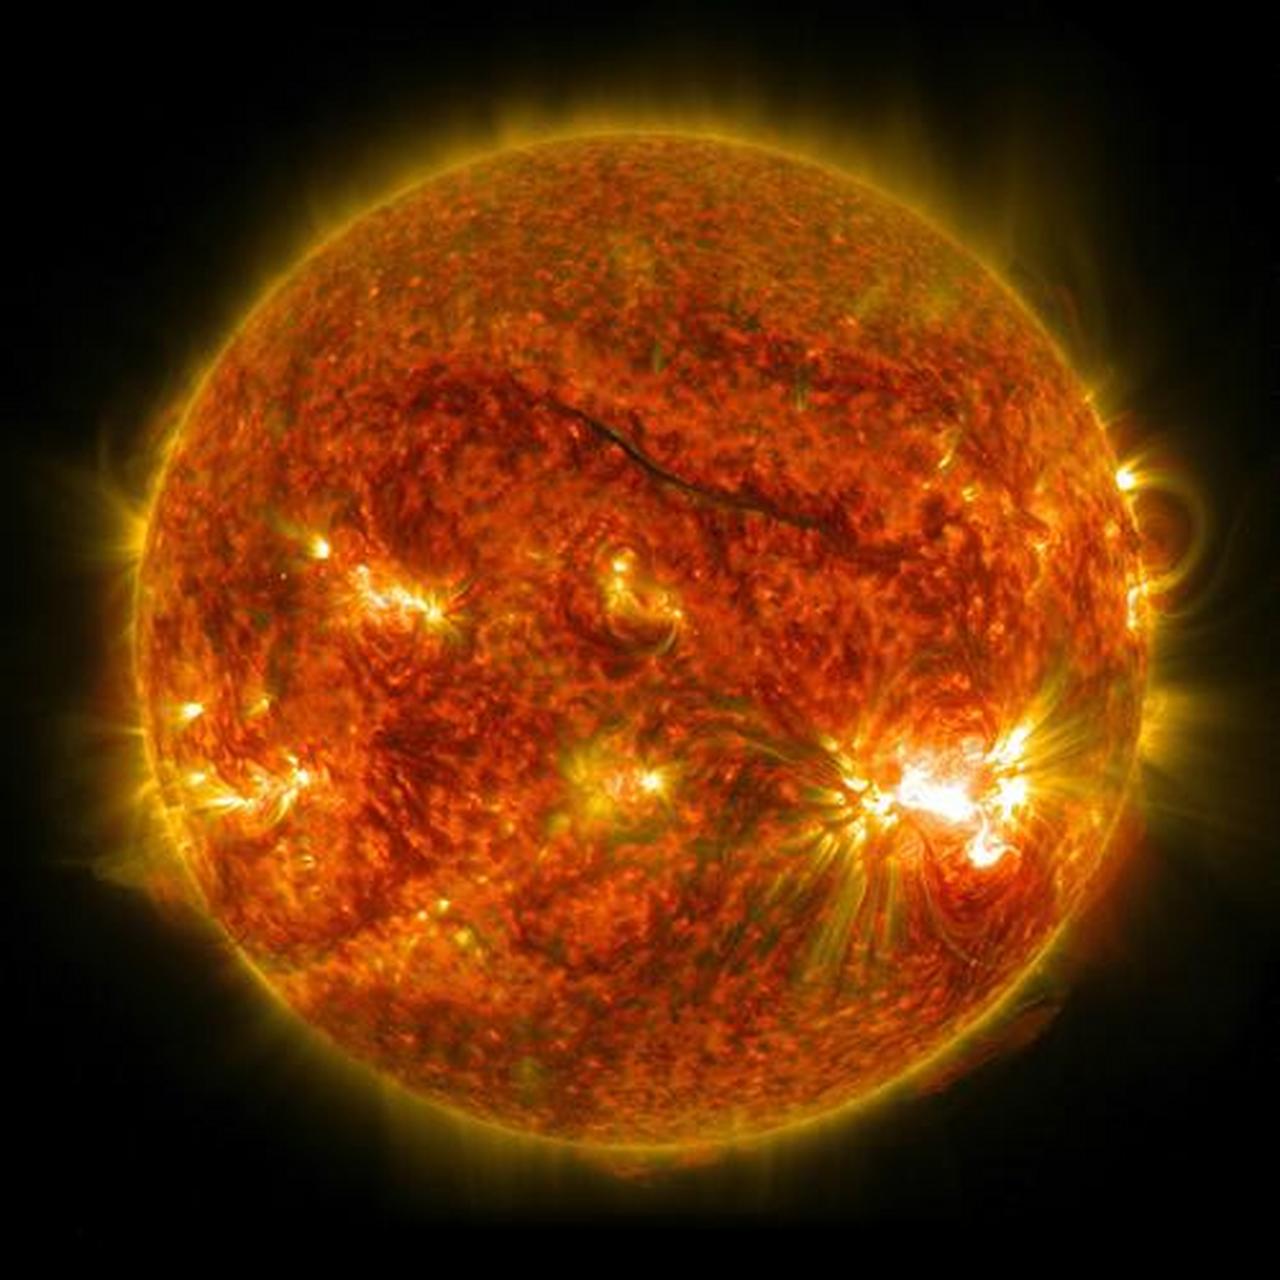 太阳主序星丶黄矮星,红巨星阶段元素层次关系 太阳氢核聚变至氦聚变